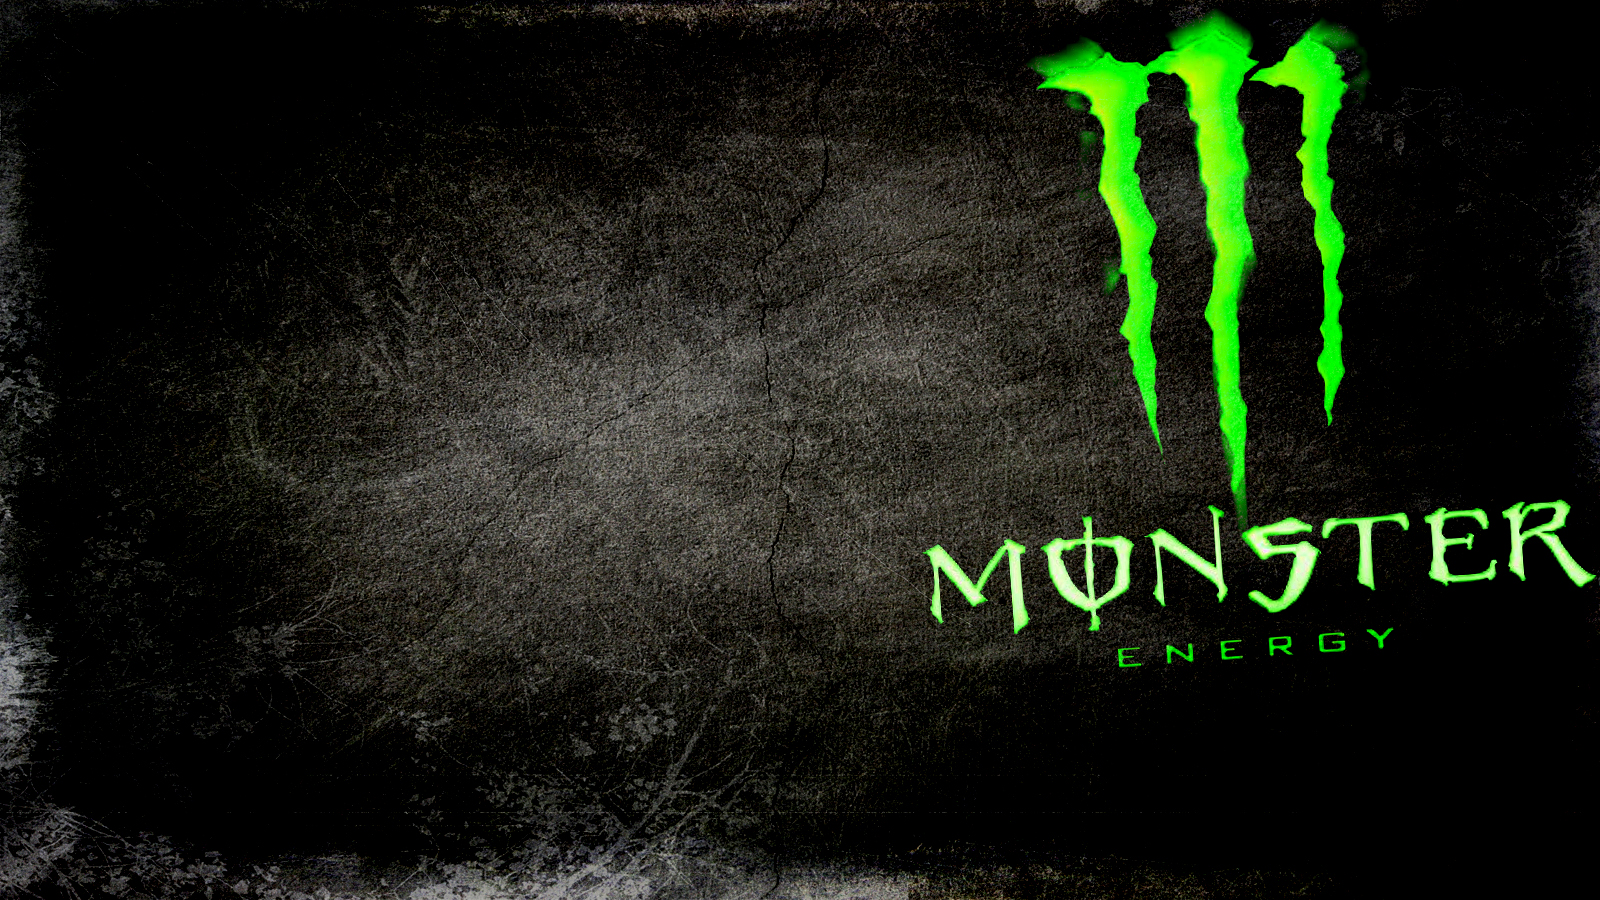 Monster energy wallpaper